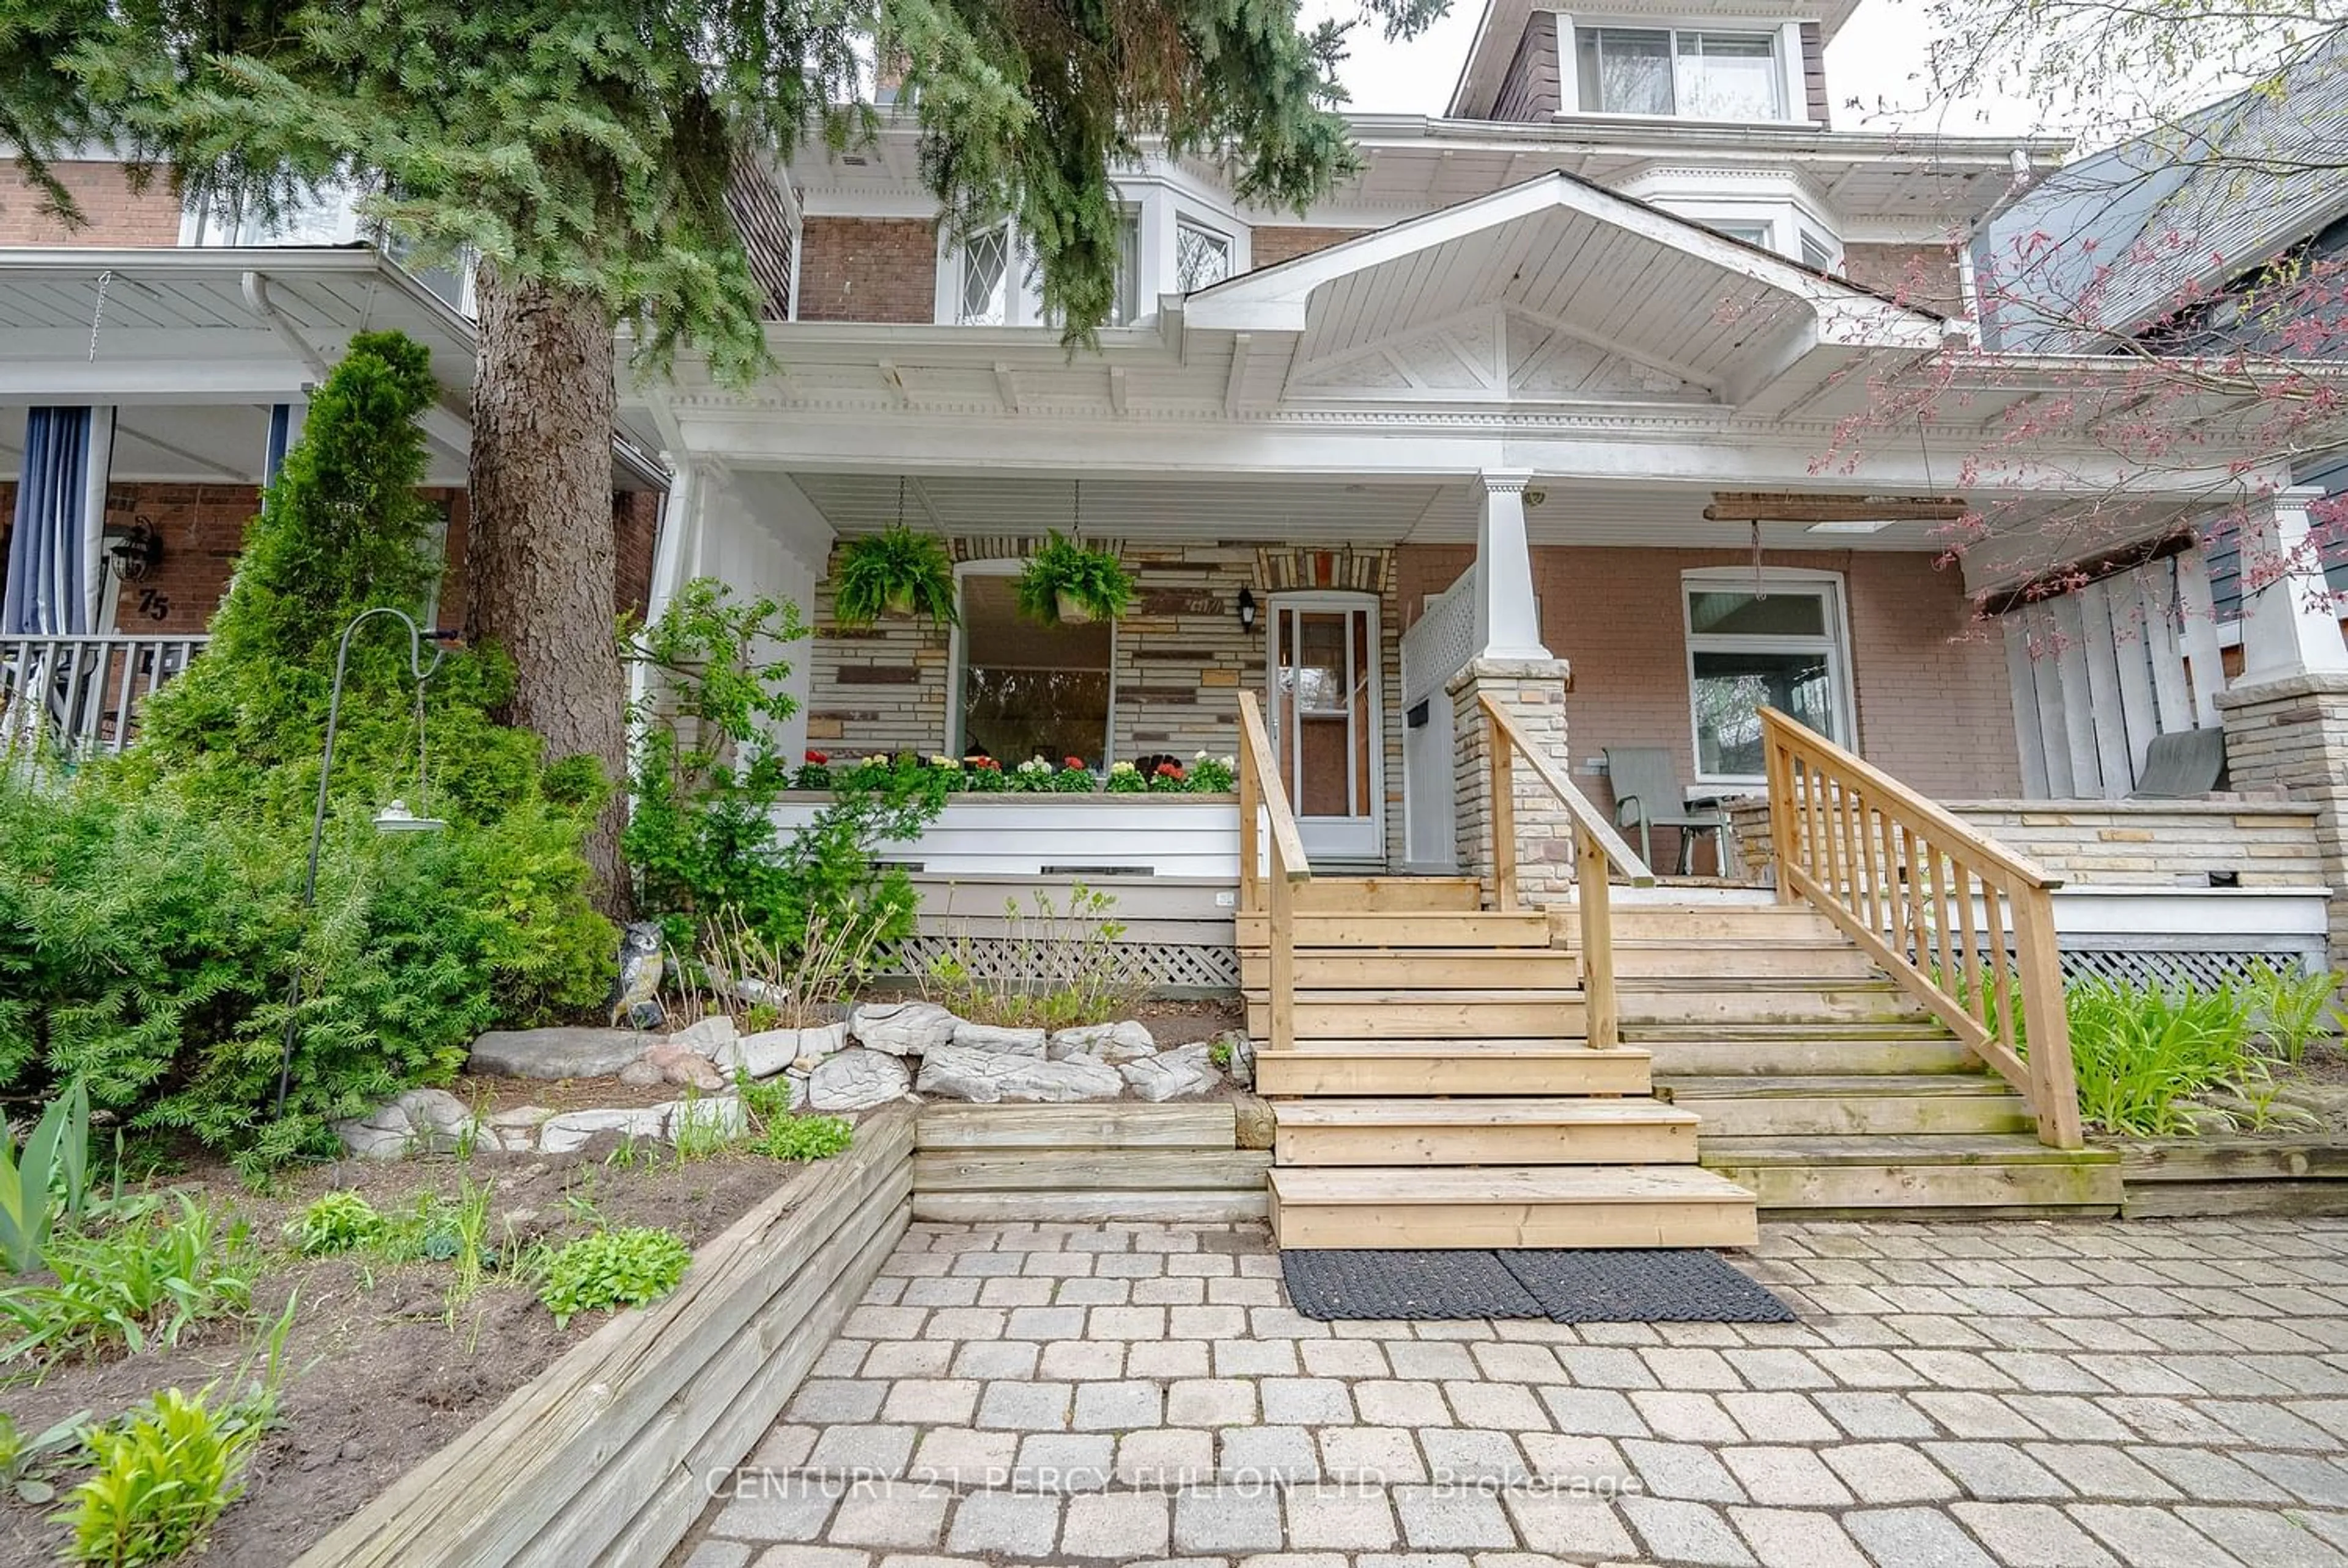 Home with brick exterior material for 73 Wheeler Ave, Toronto Ontario M4L 3V3